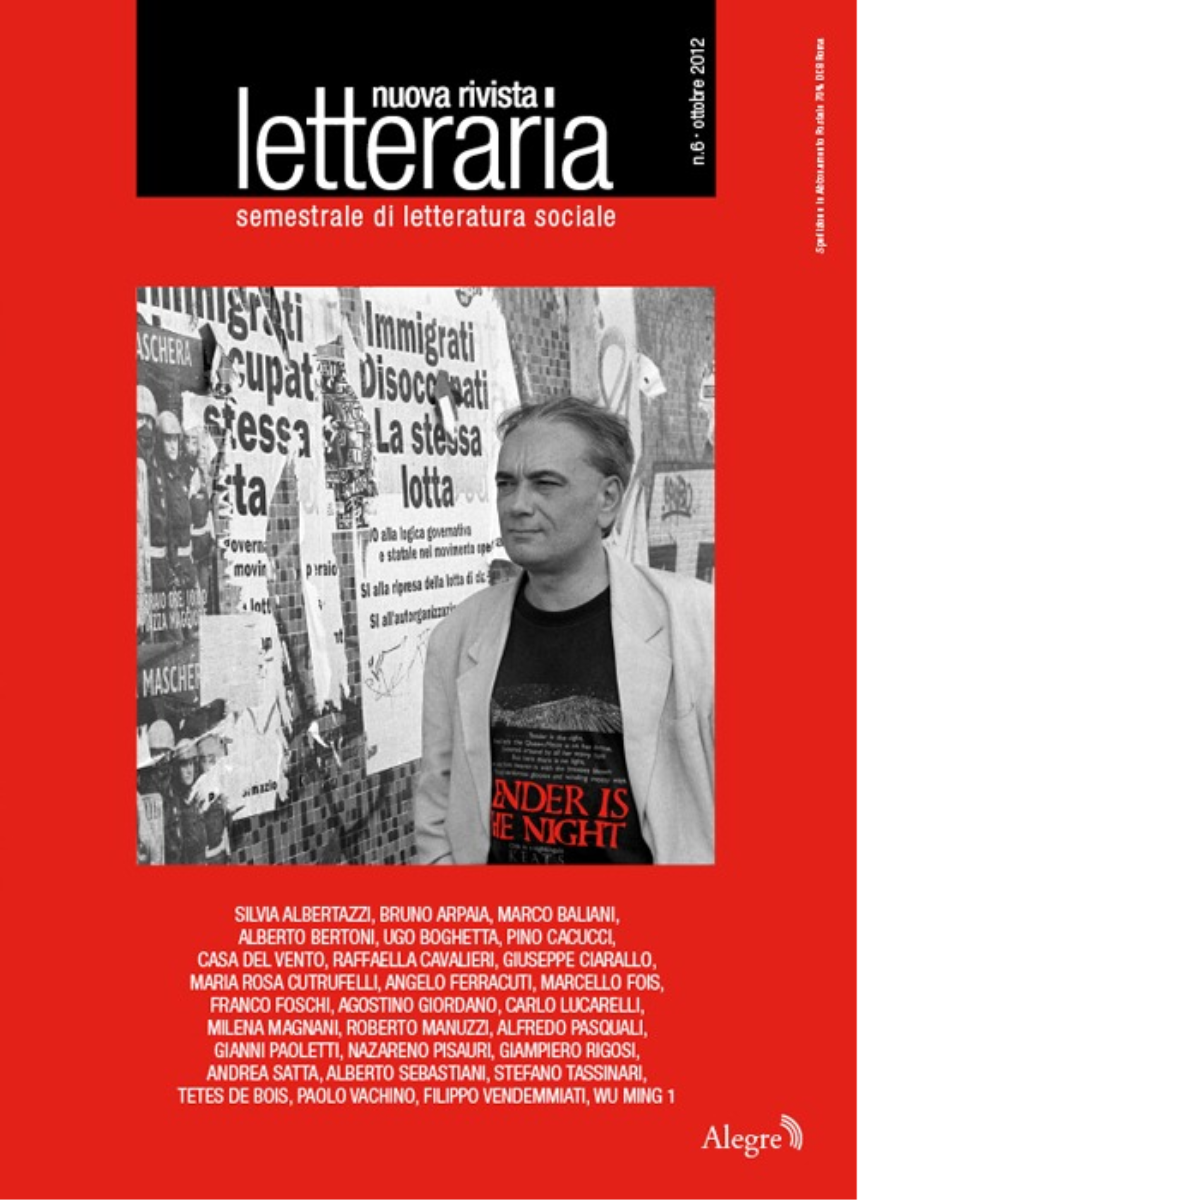 NUOVA RIVISTA LETTERARIA (2012). VOL. 6 di AA.VV. - edizioni alegre, 2012